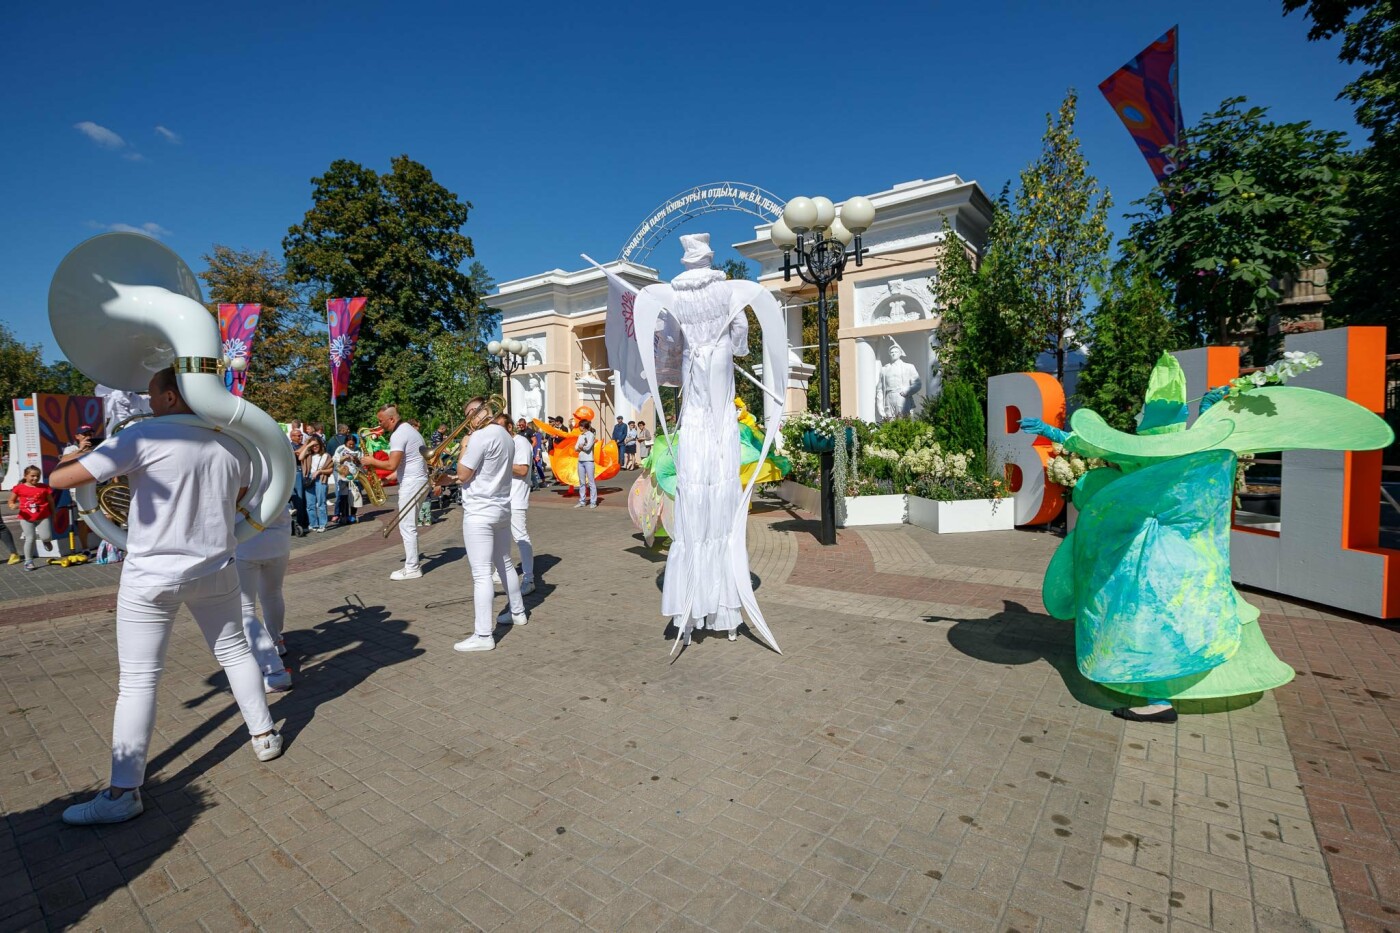 Фестиваль «Белгород в цвету» – 2022